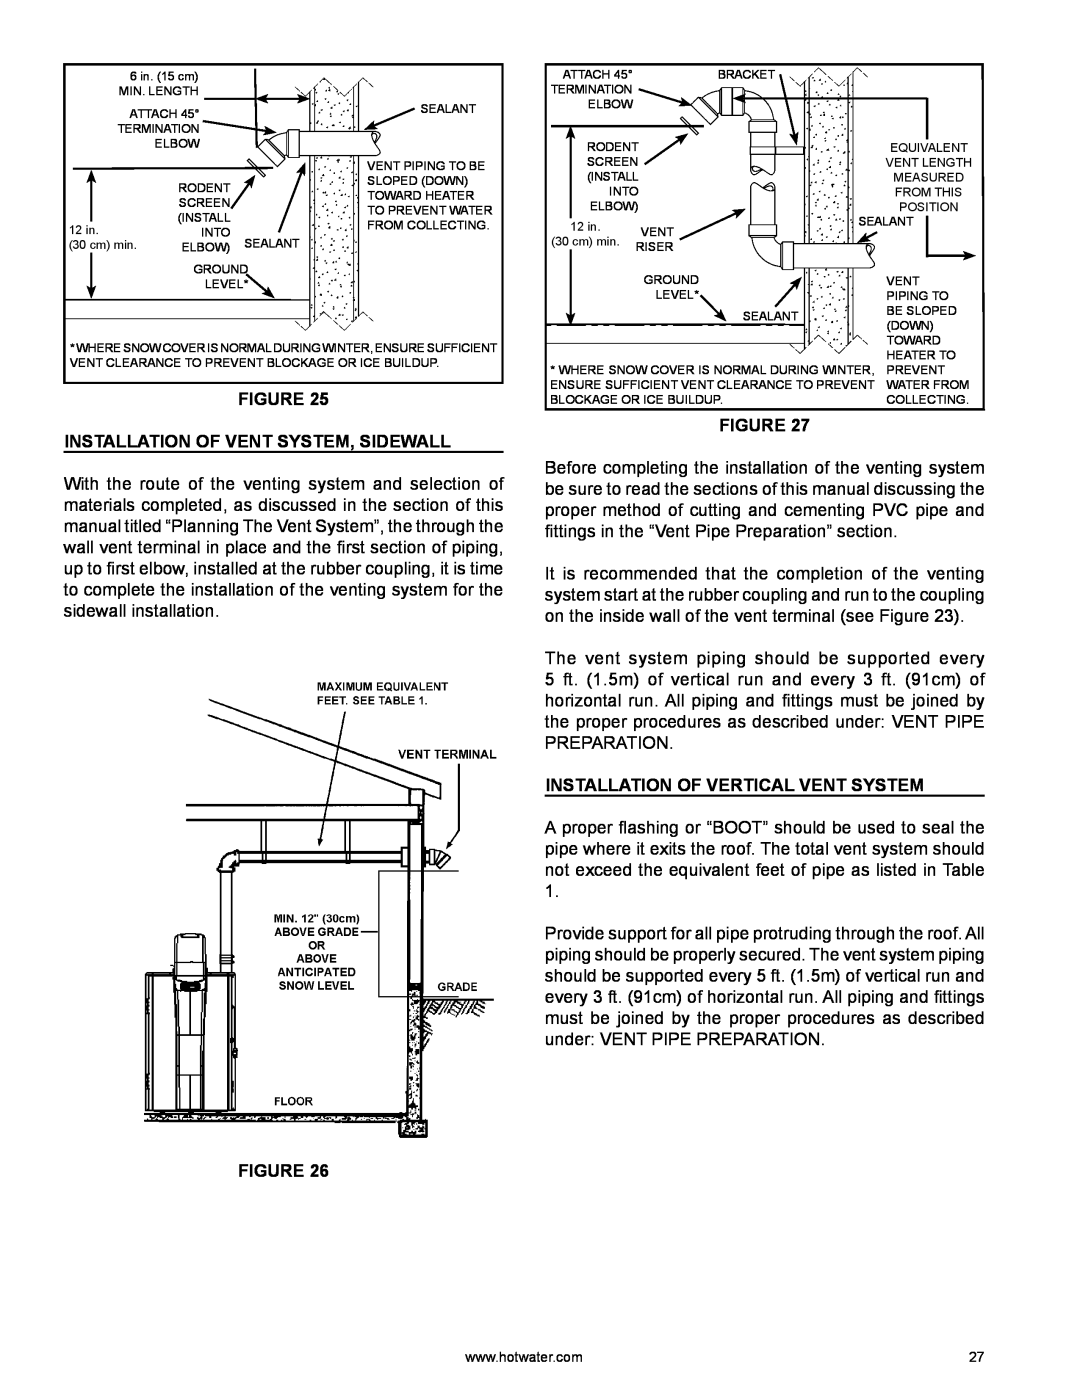 A.O. Smith HYB-90N warranty Installation Of Vent System, Sidewall, Installation Of Vertical Vent System 